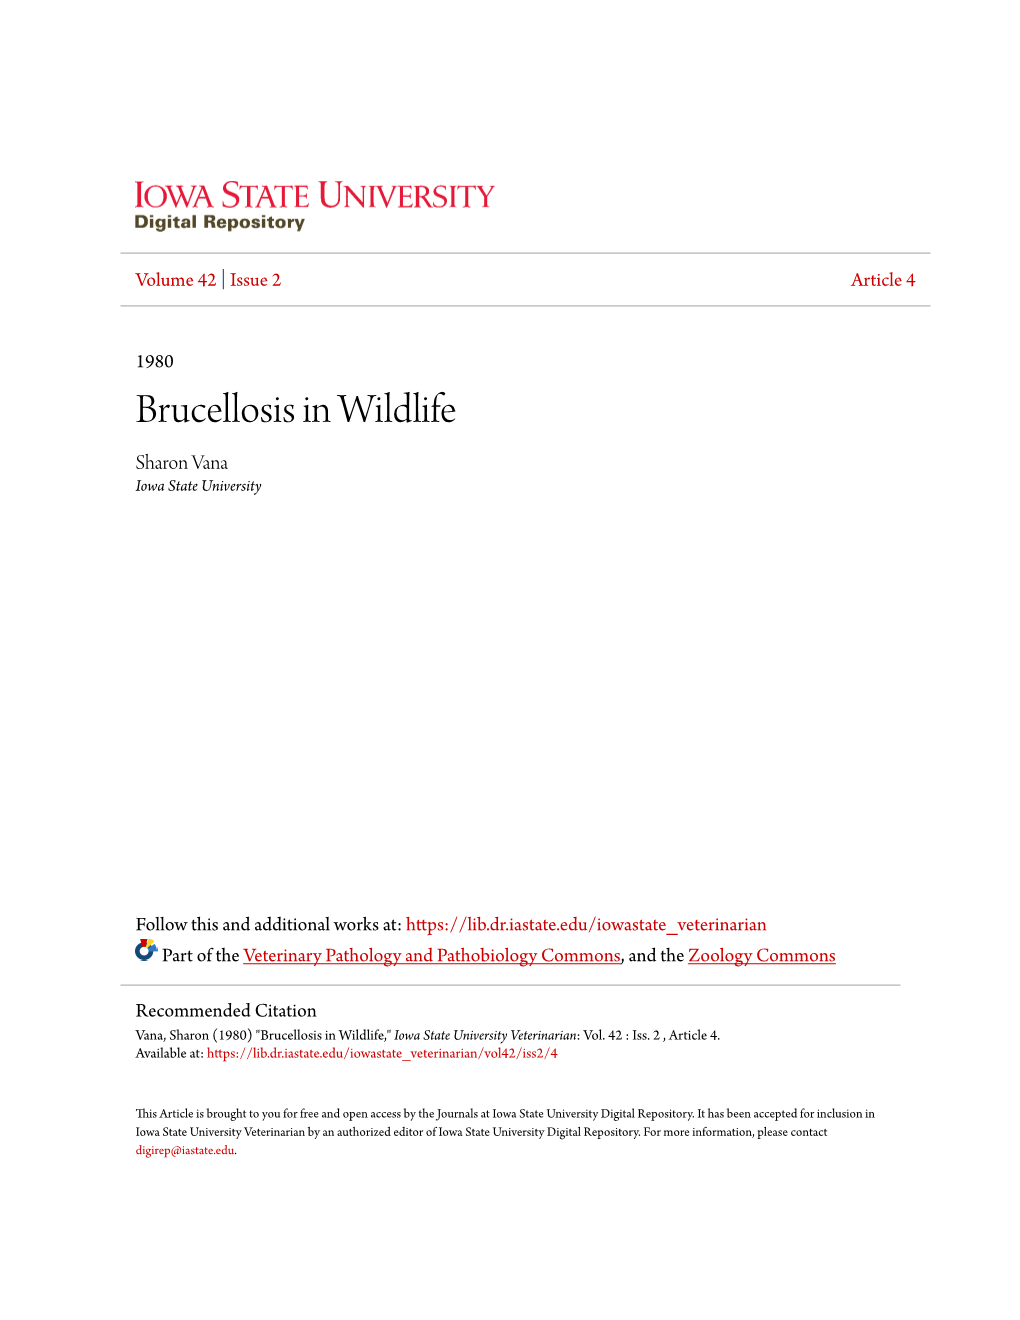 Brucellosis in Wildlife Sharon Vana Iowa State University